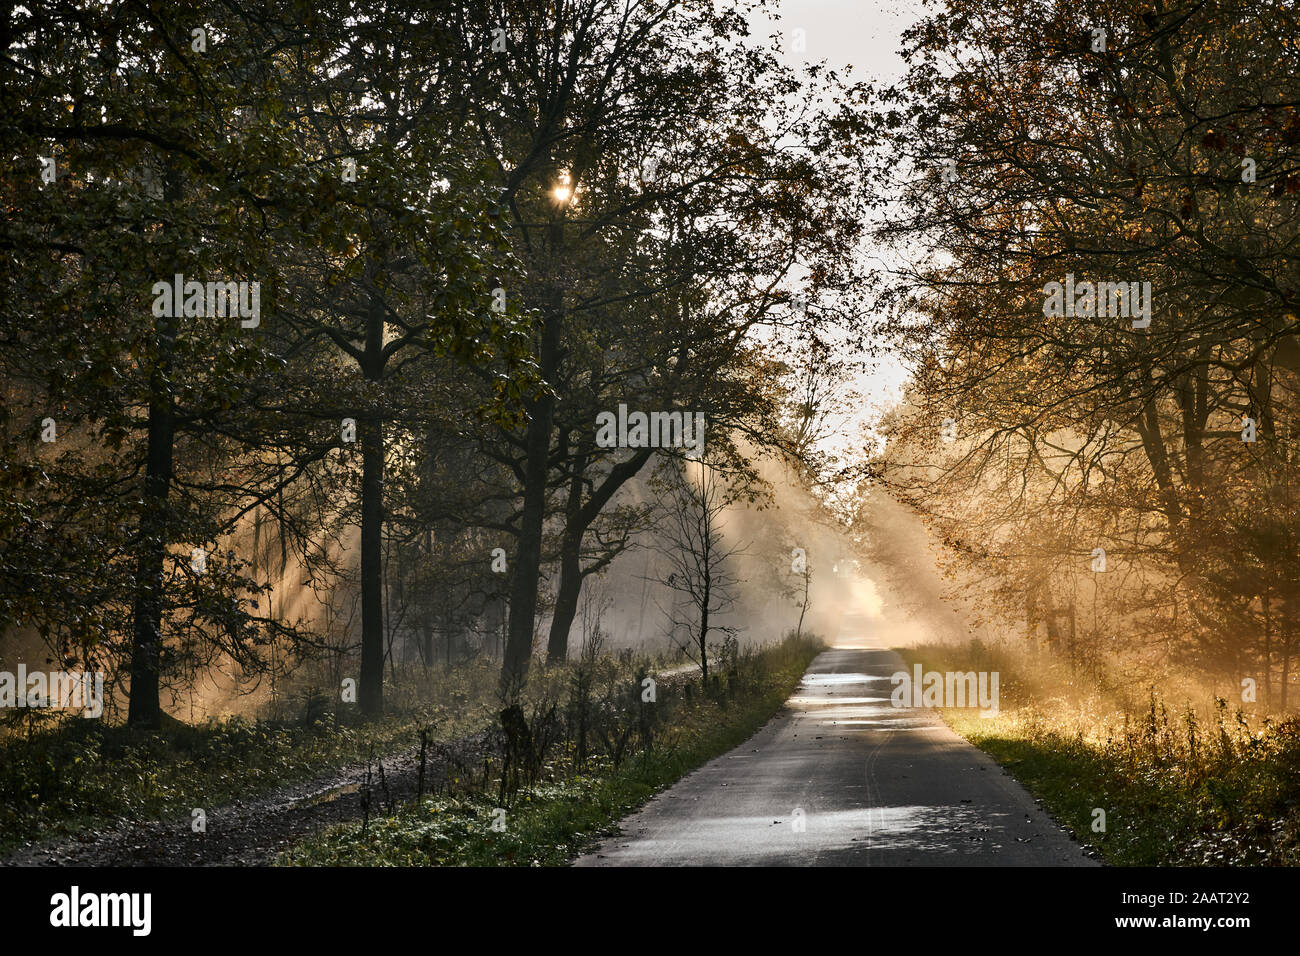 Sunset y rayos de sol en una carretera, árboles y naturaleza en Luneburger Heath, Alemania Foto de stock